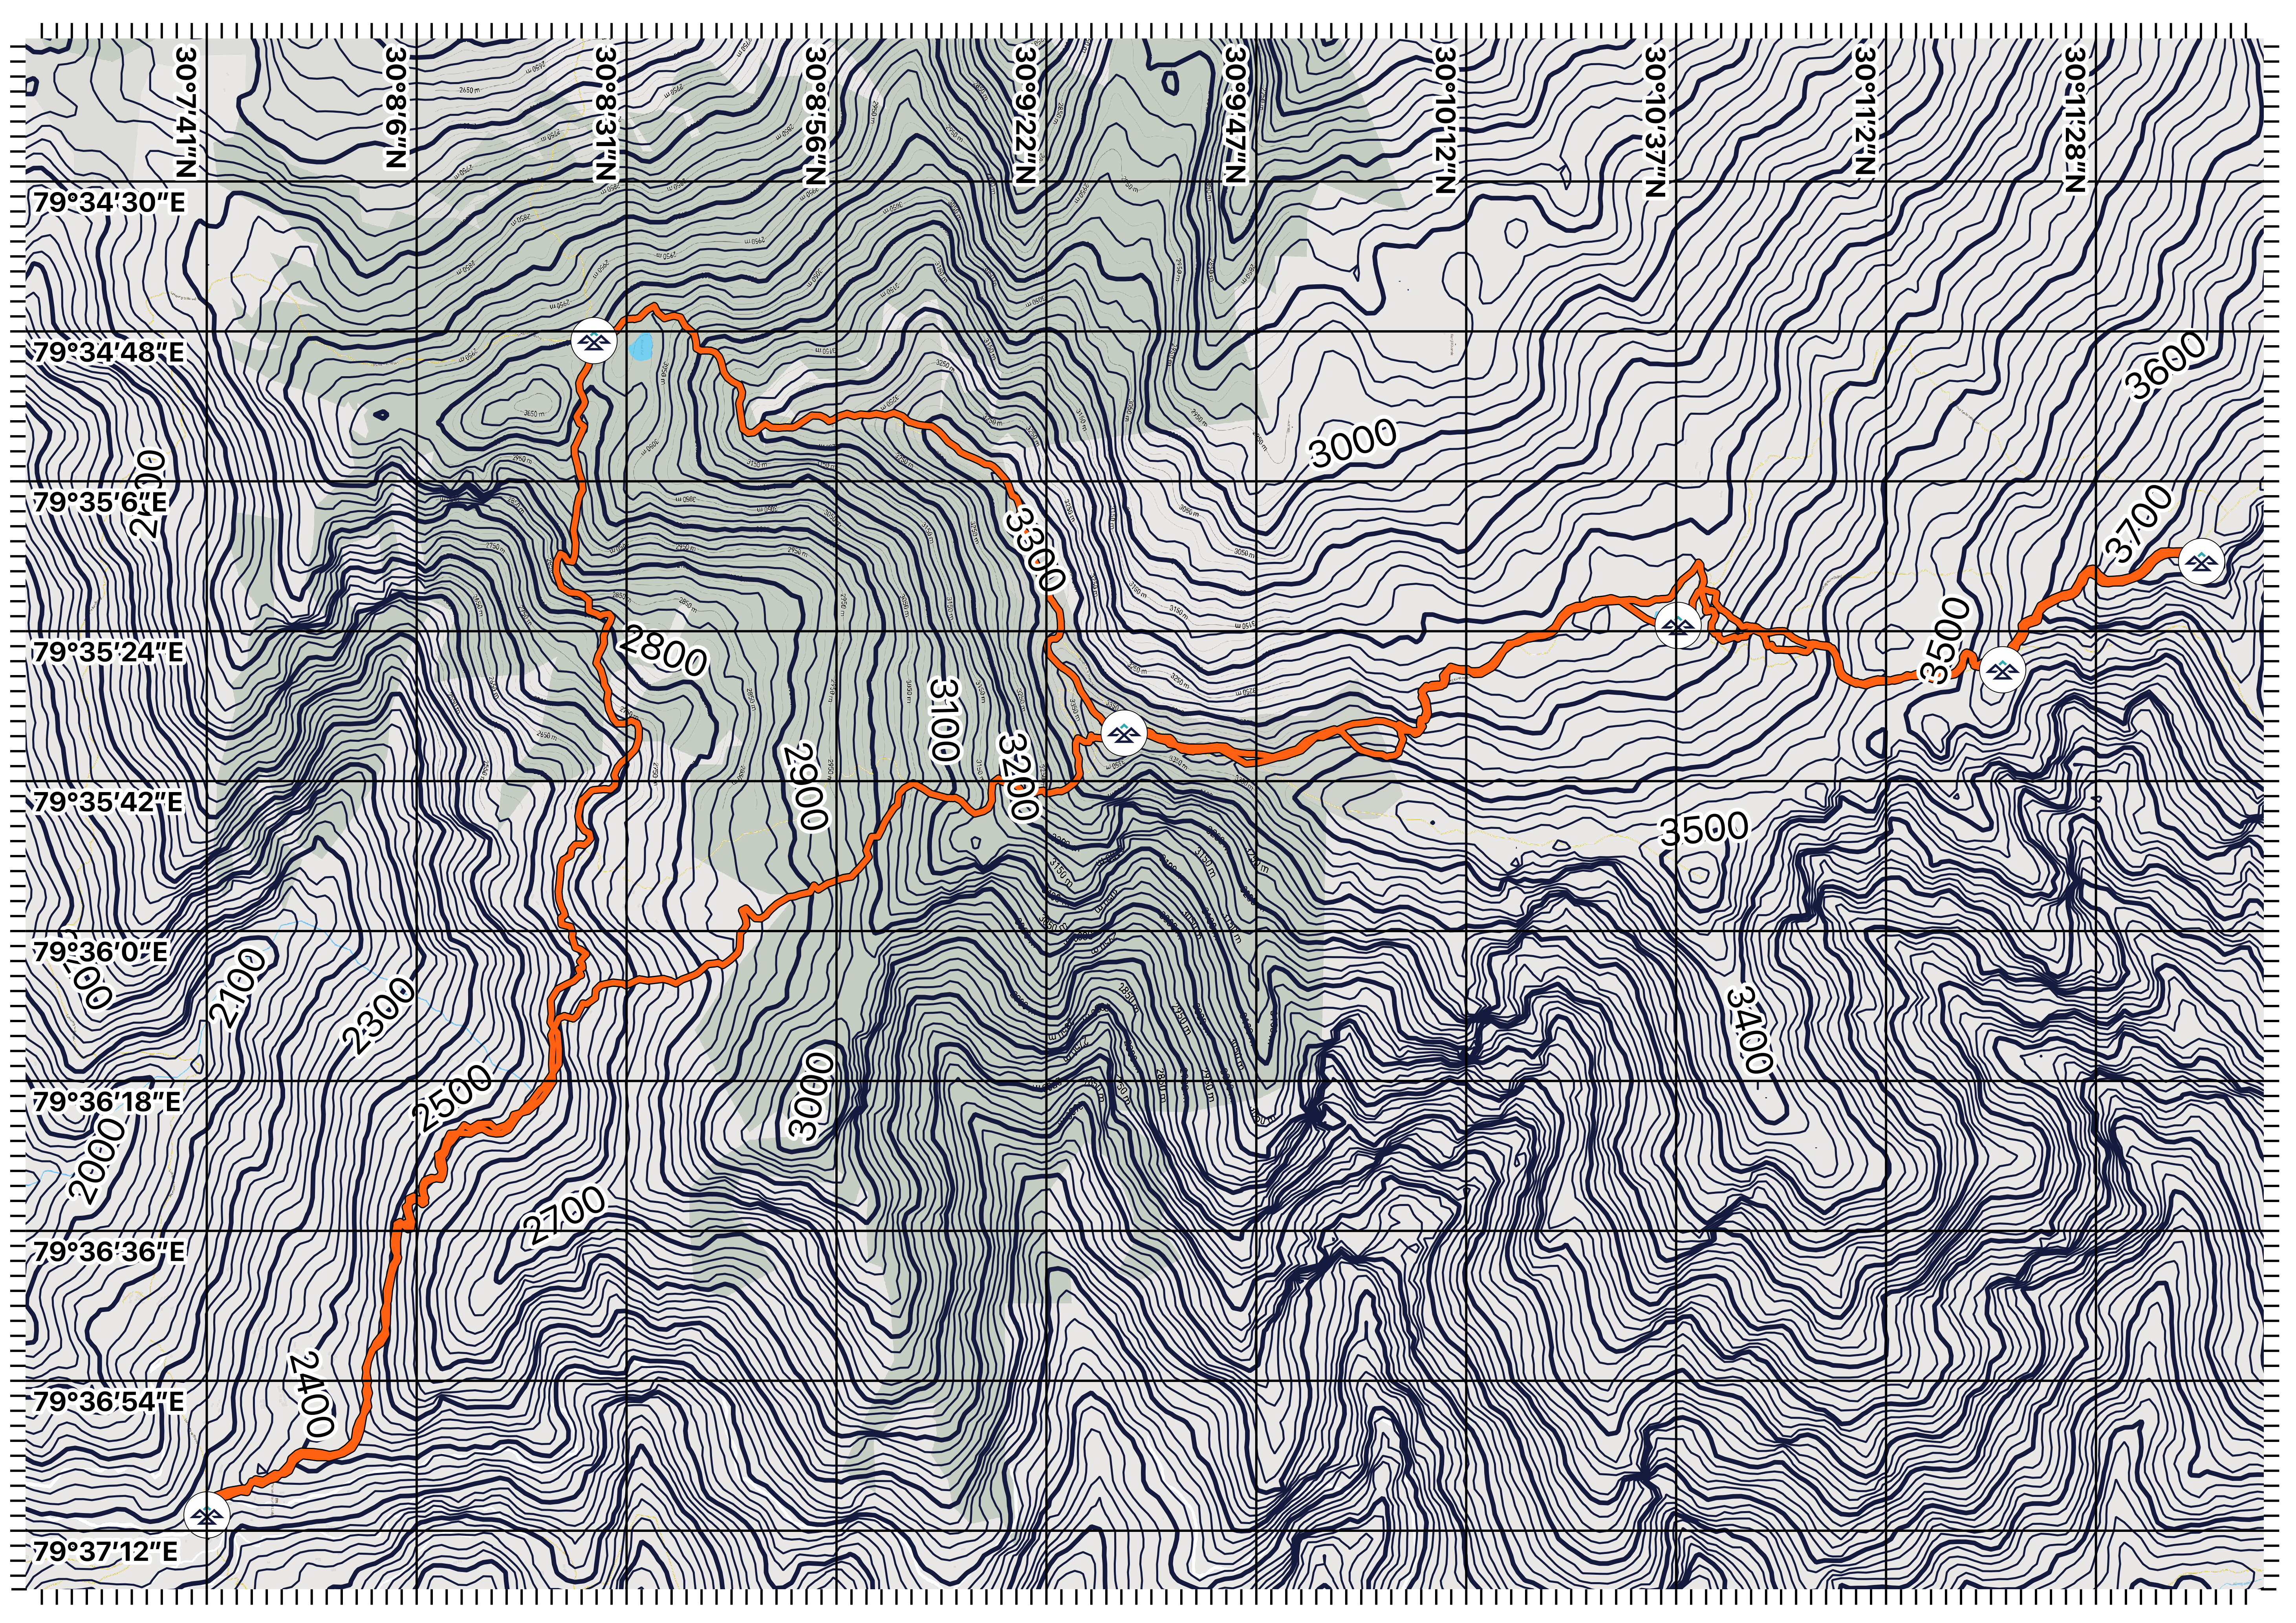 Brahmatal contour map by owls adventures